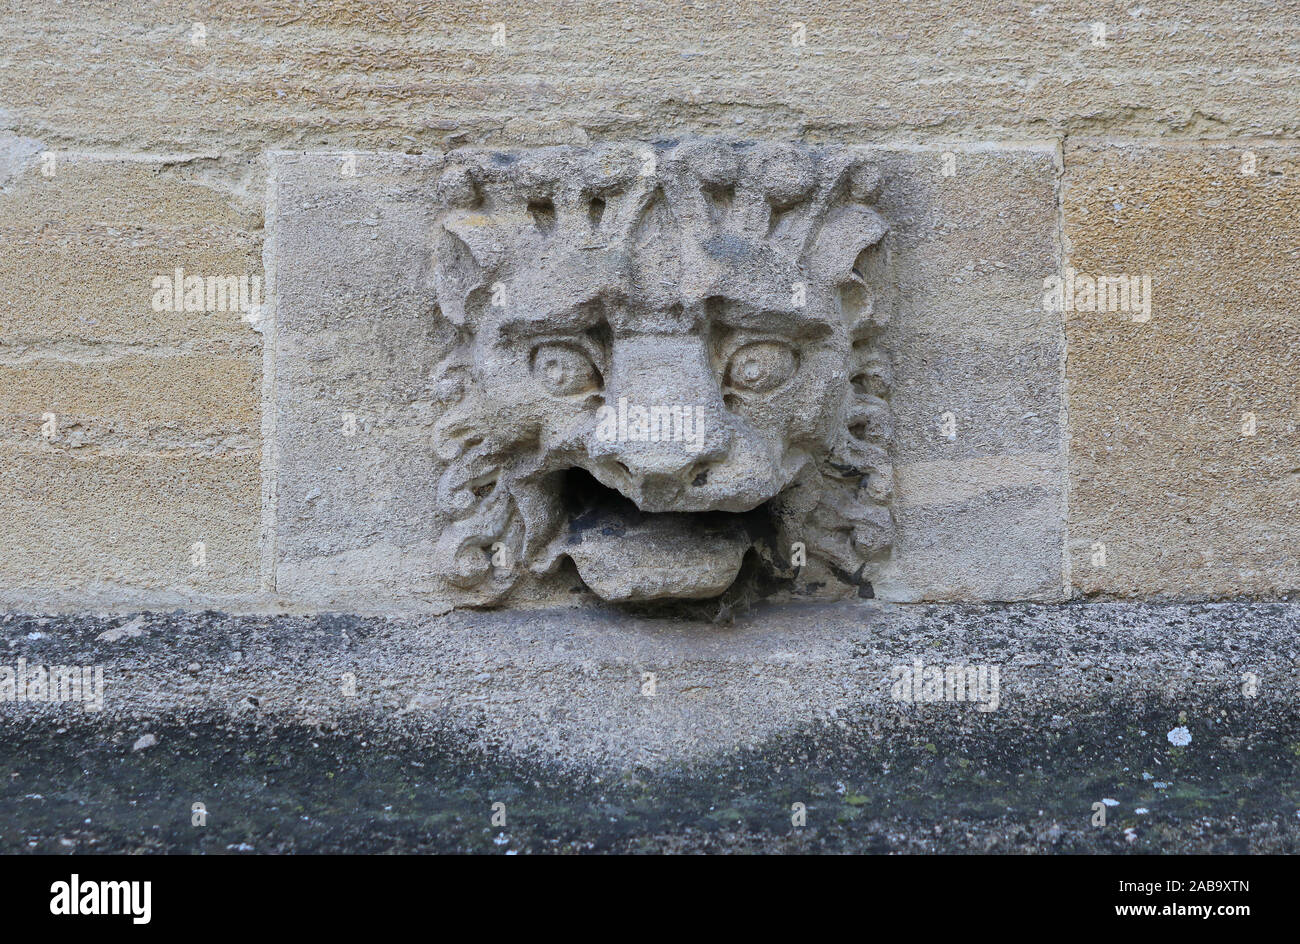 Steinerne Wasserspeier eines Löwen an der Wand eines Colleges in Oxford Teil der Universität in Sandstein oder Kalkstein aus der Cotswold Region Oxfordshire Stockfoto